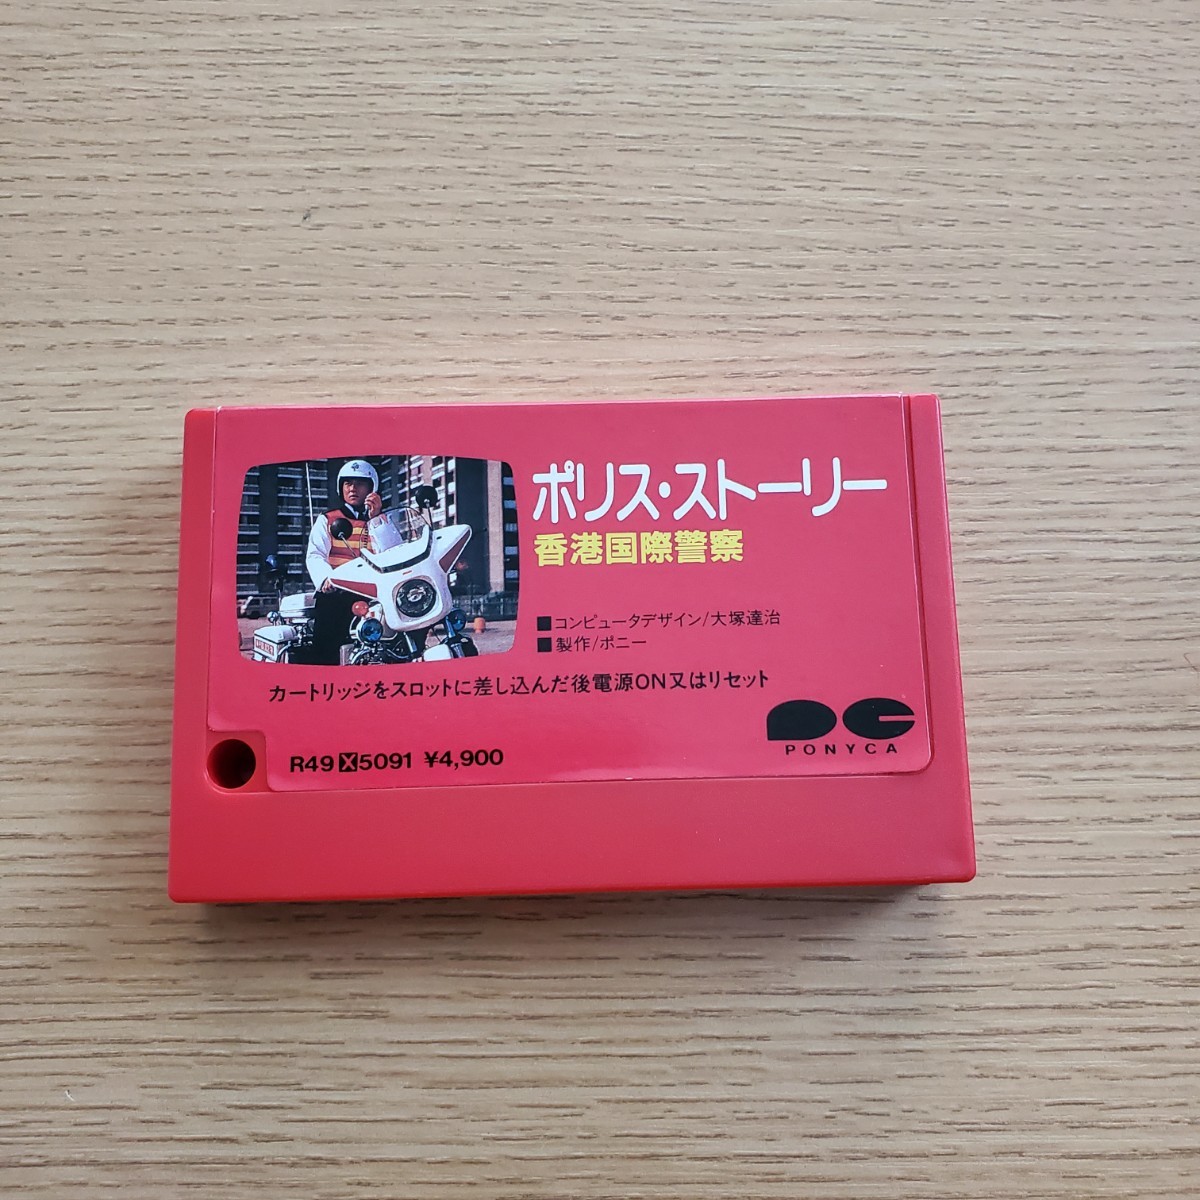 MSX Police * -тактный - Lee Hong Kong международный полиция коробка мнение открытка стоимость доставки 230 иен ~ очень редкий домкрат - чейнджер 